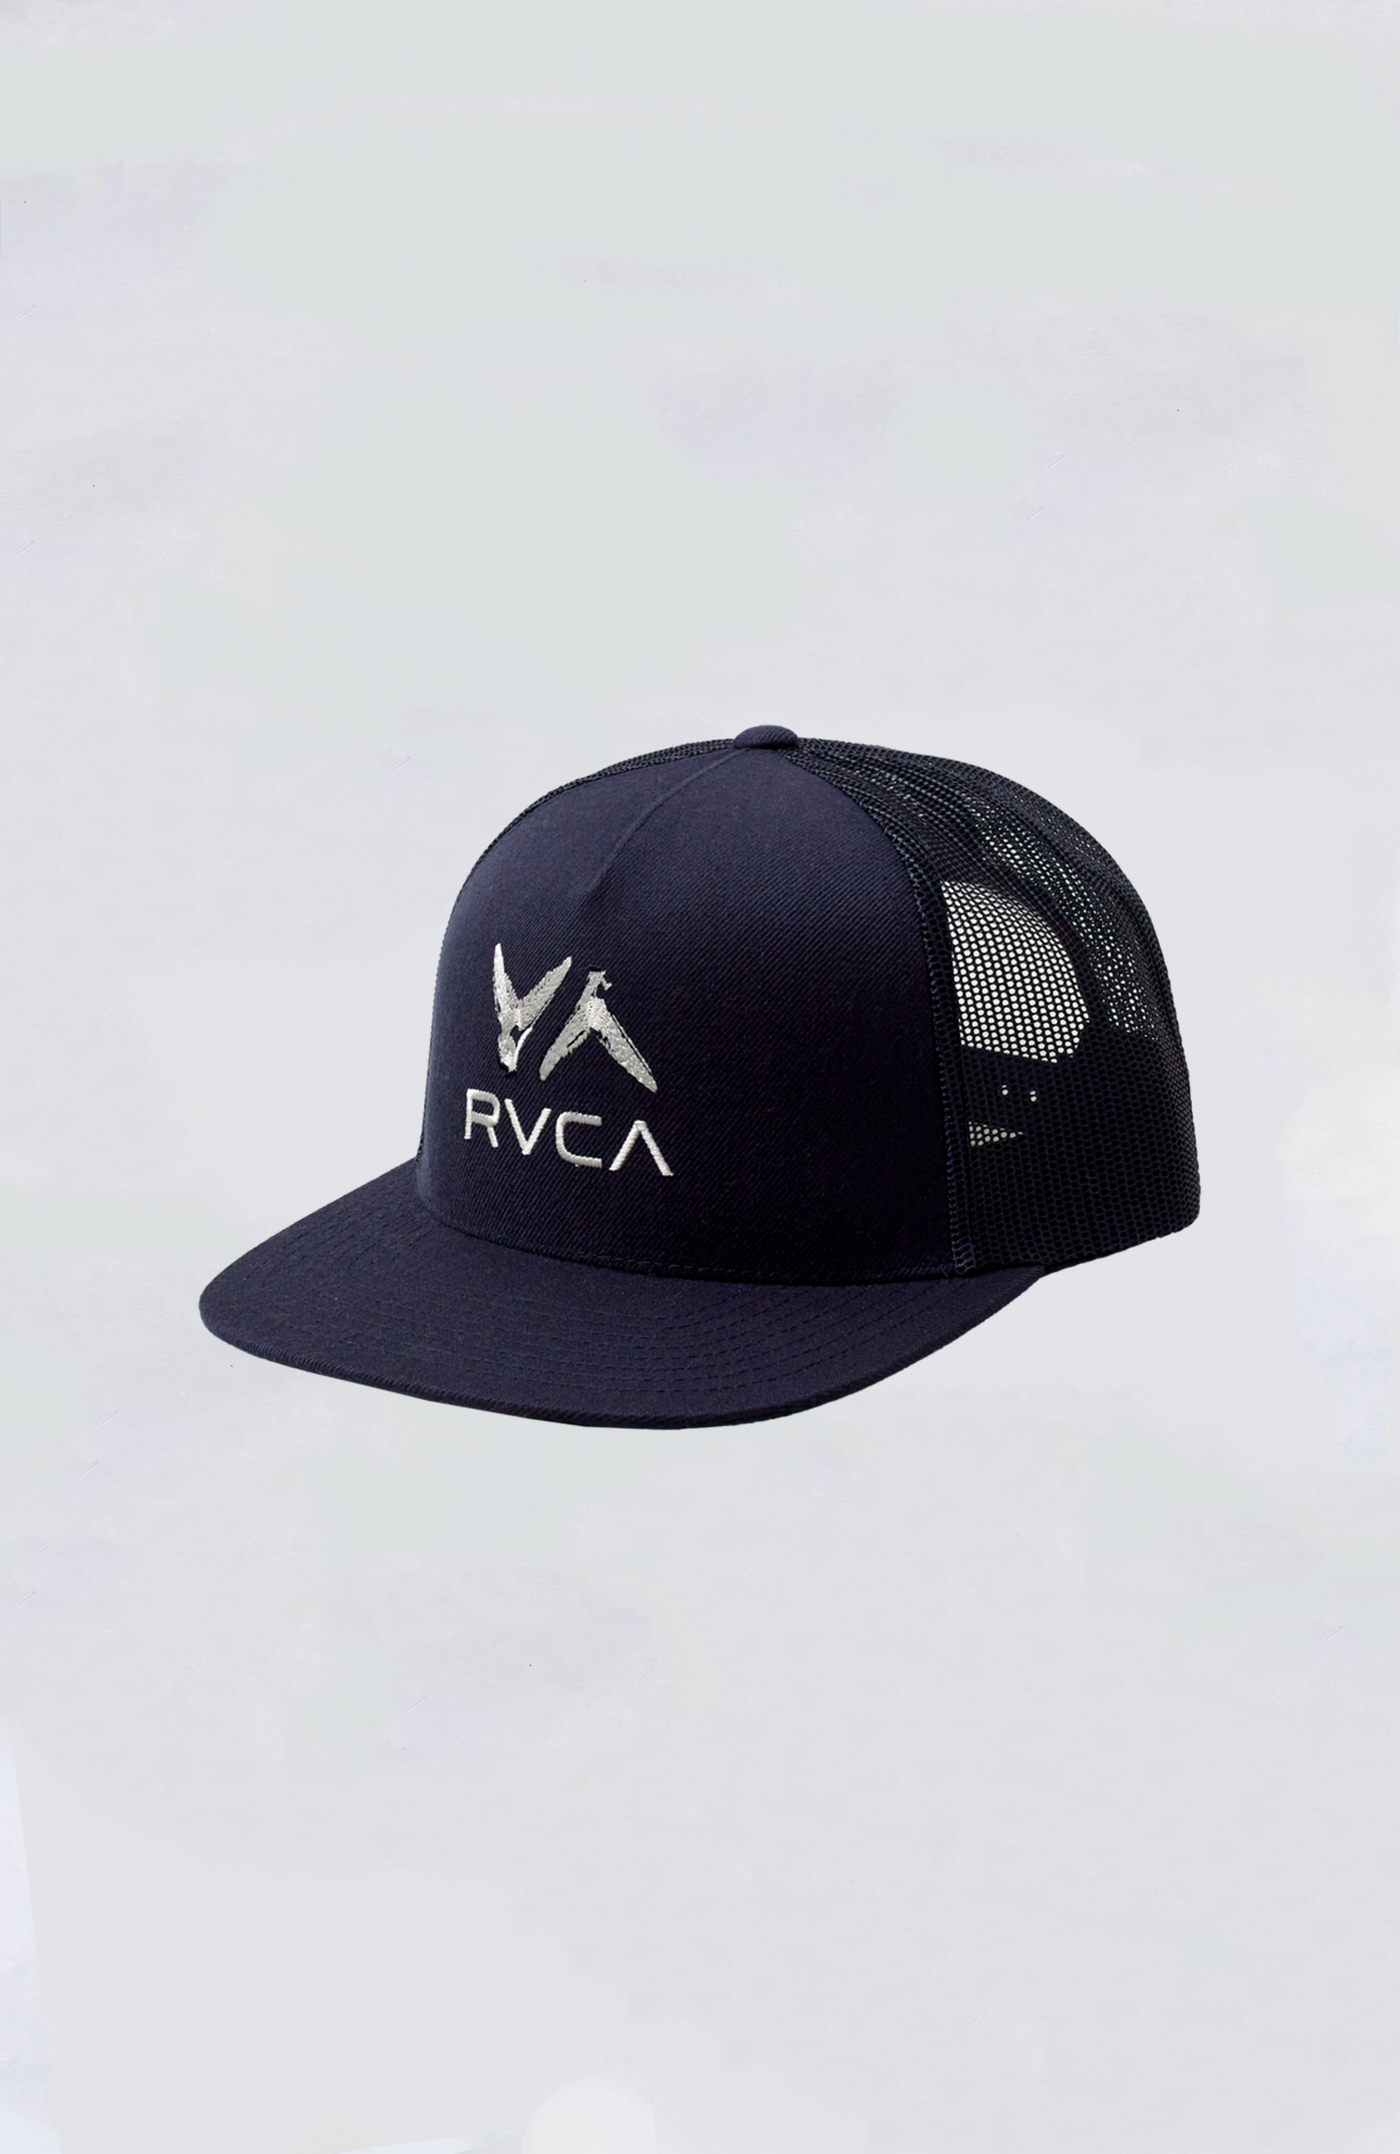 RVCA - Legend and Mana VA ATW Trucker